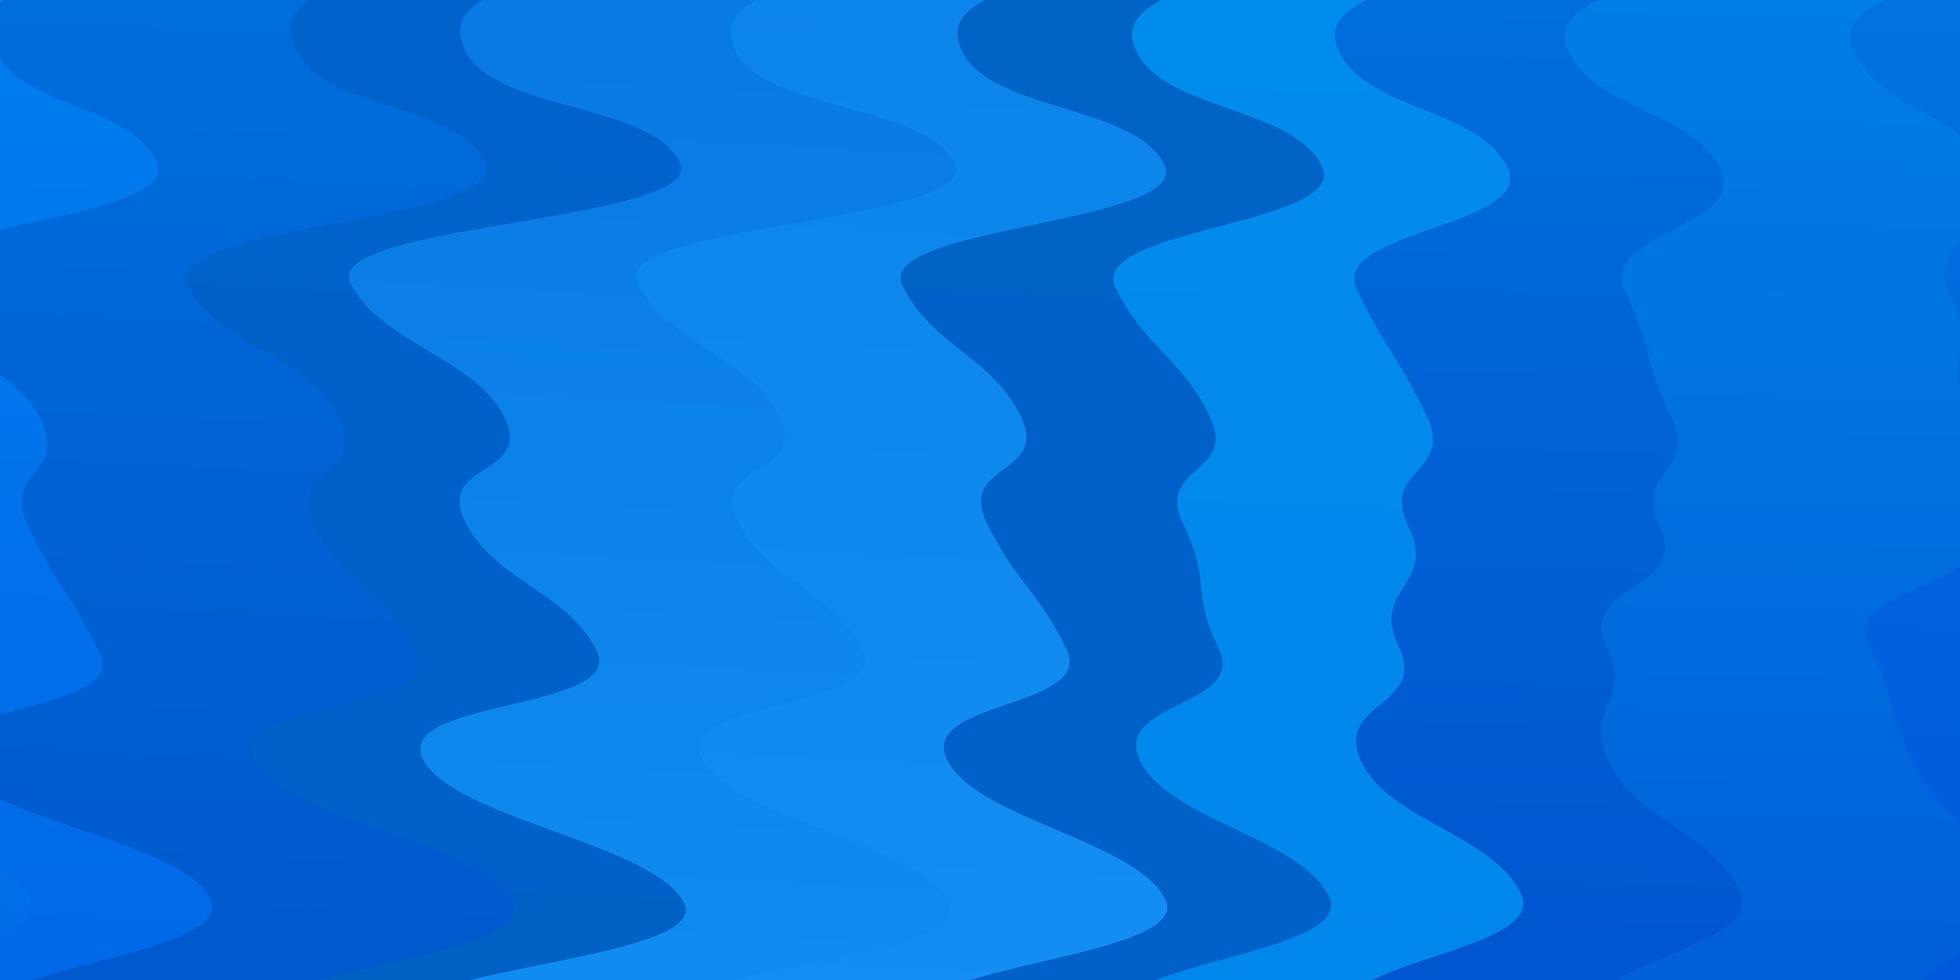 toile de fond de vecteur bleu clair avec des courbes.